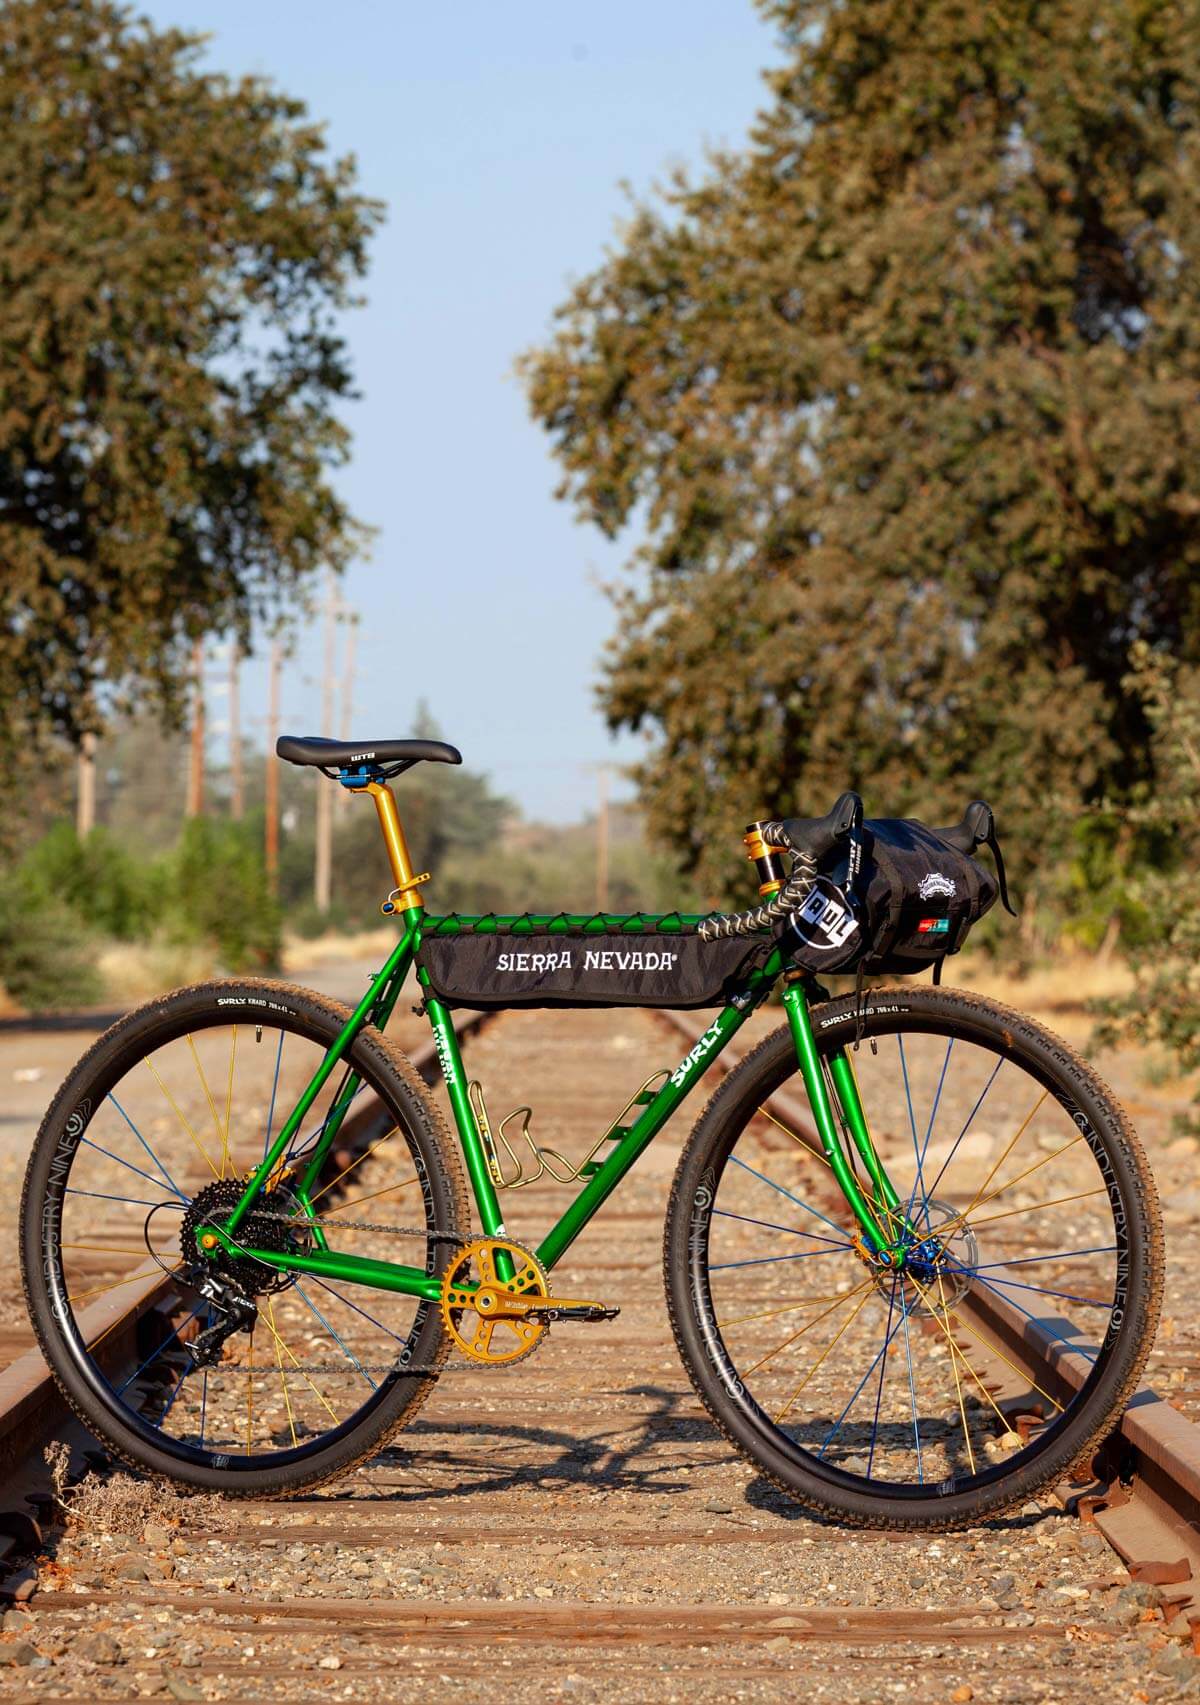 Sierra Nevada bike